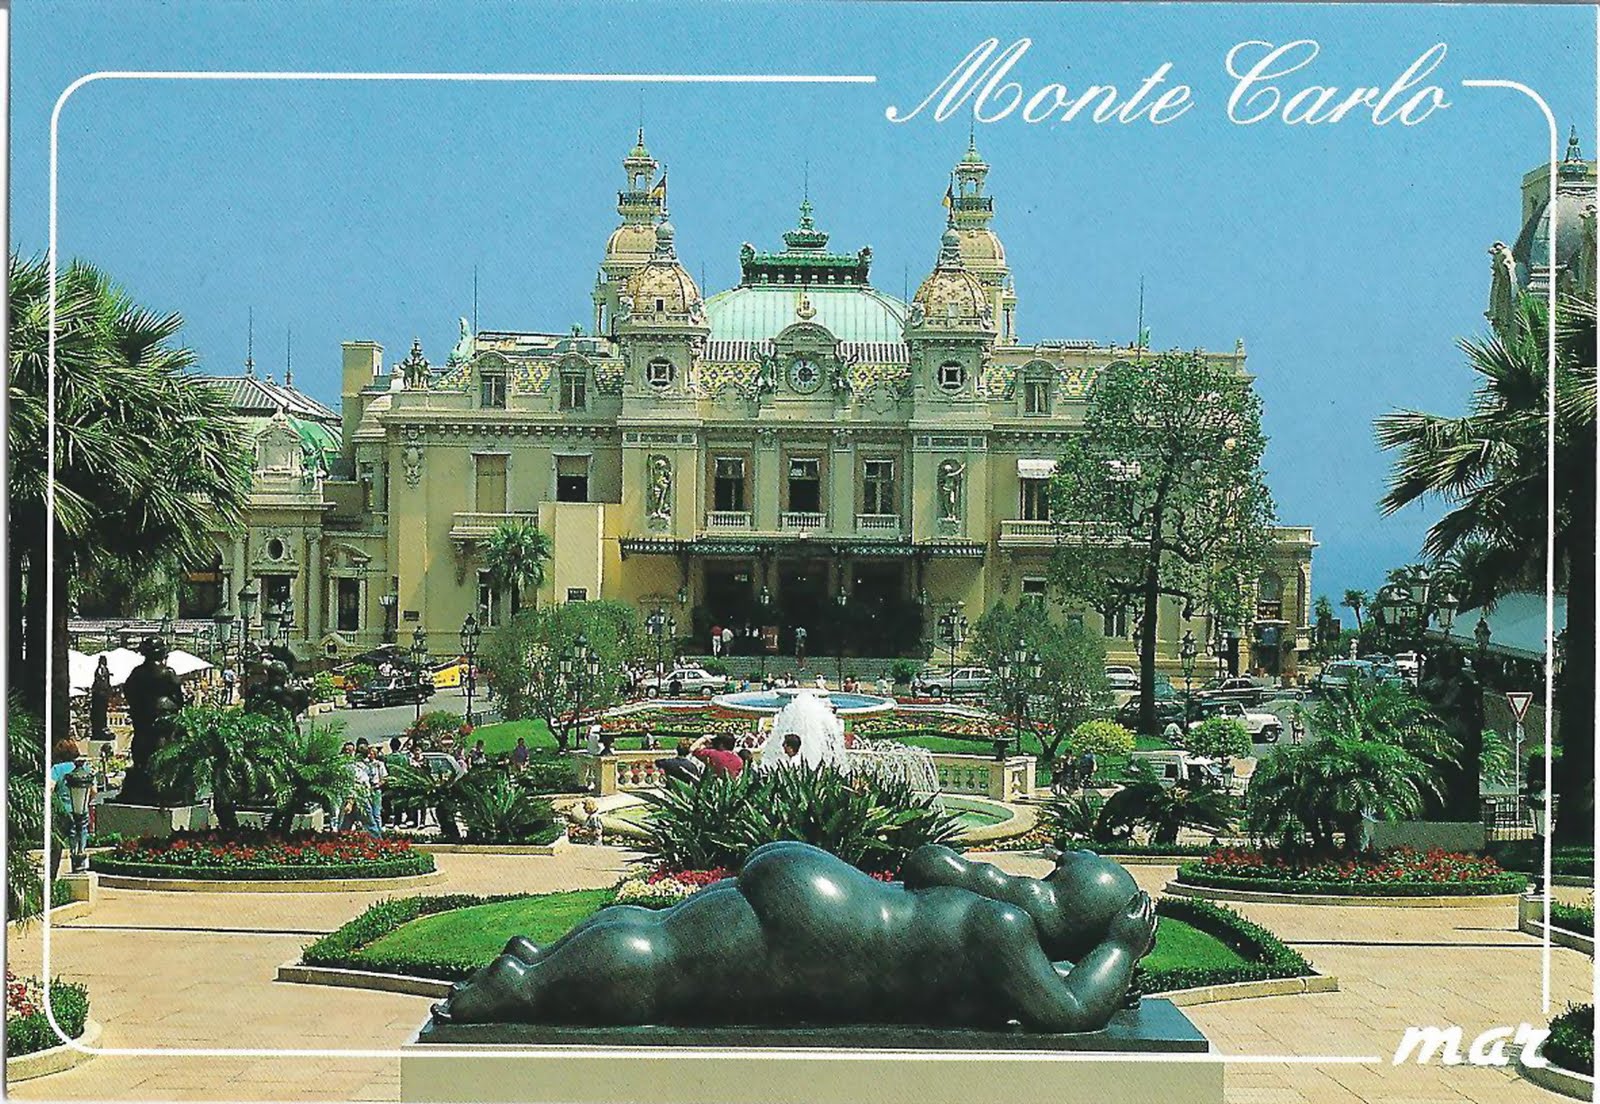 Online Casino Monte Carlo